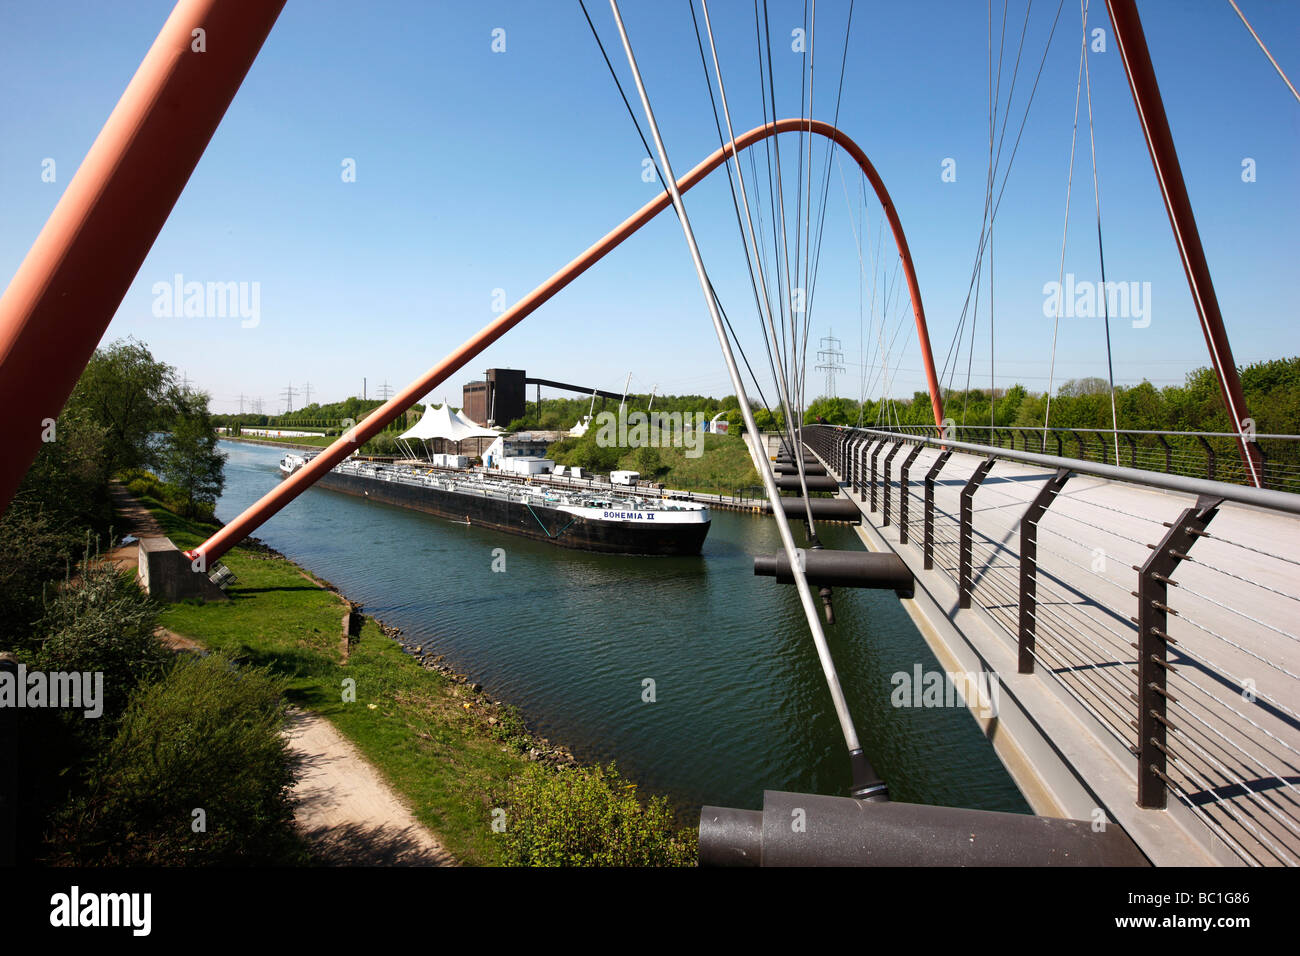 Pont sur l'arc double canal Rhin Herne, Gelsenkirchen, Allemagne Banque D'Images